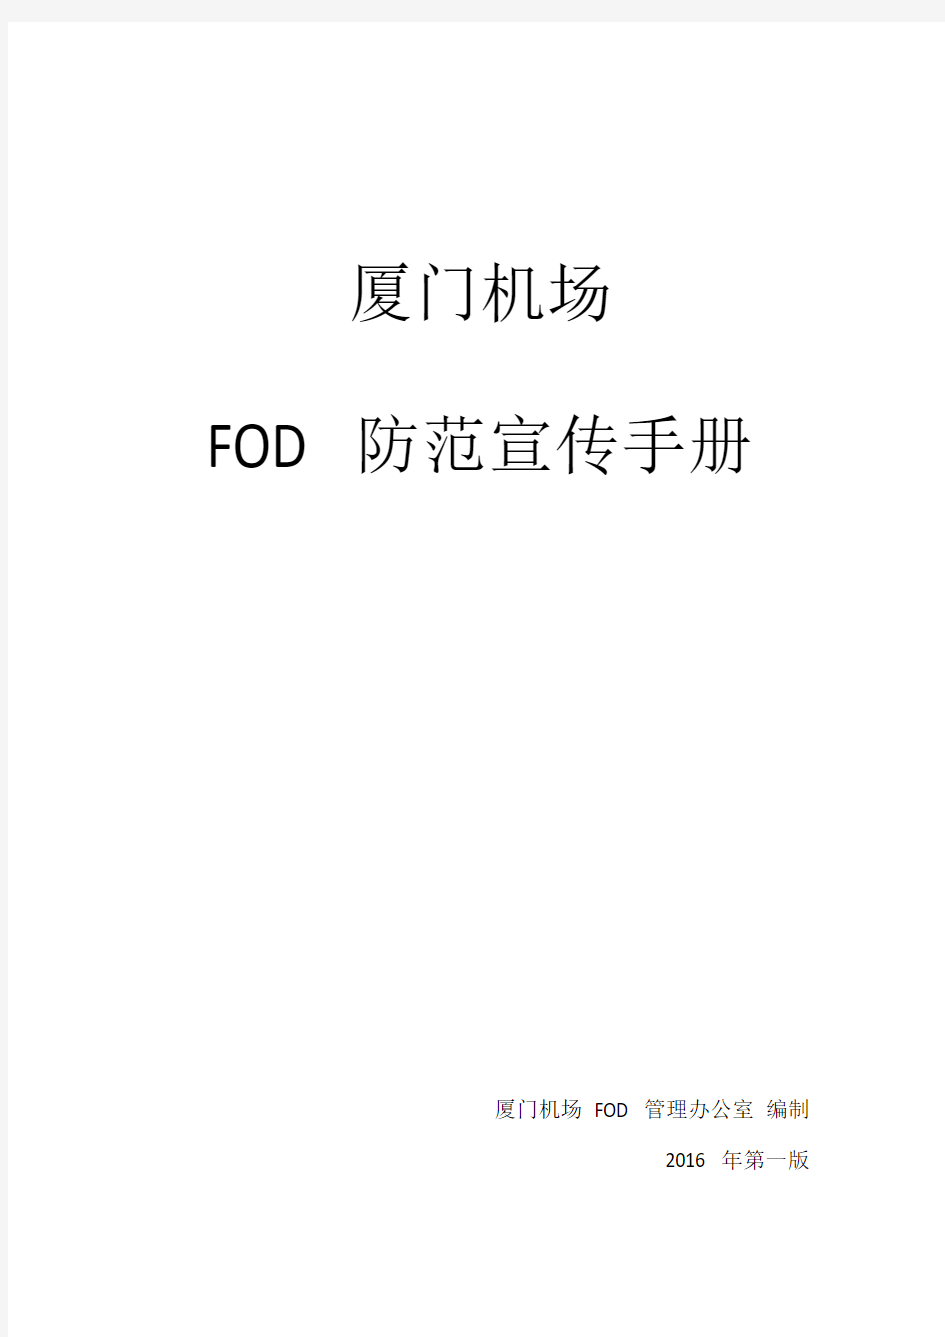 FOD防范宣传手册